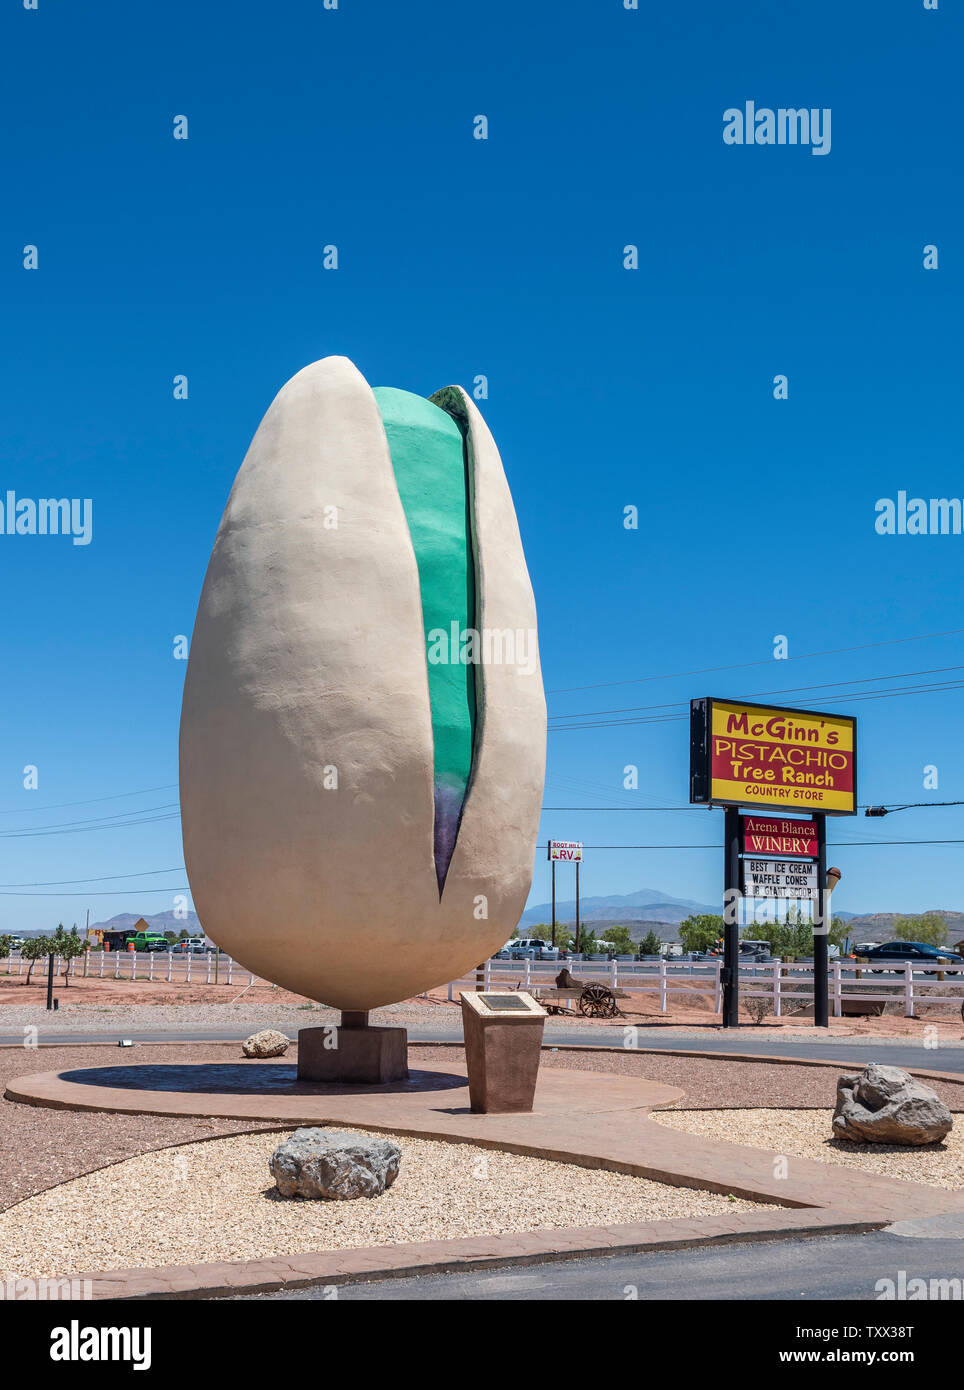 Alamogordo, New Mexico, riesige Pistazie, weltgrößte Pistazien am Straßenrand Attraktion bei McGinns's Pistazien Ranch. Stockfoto